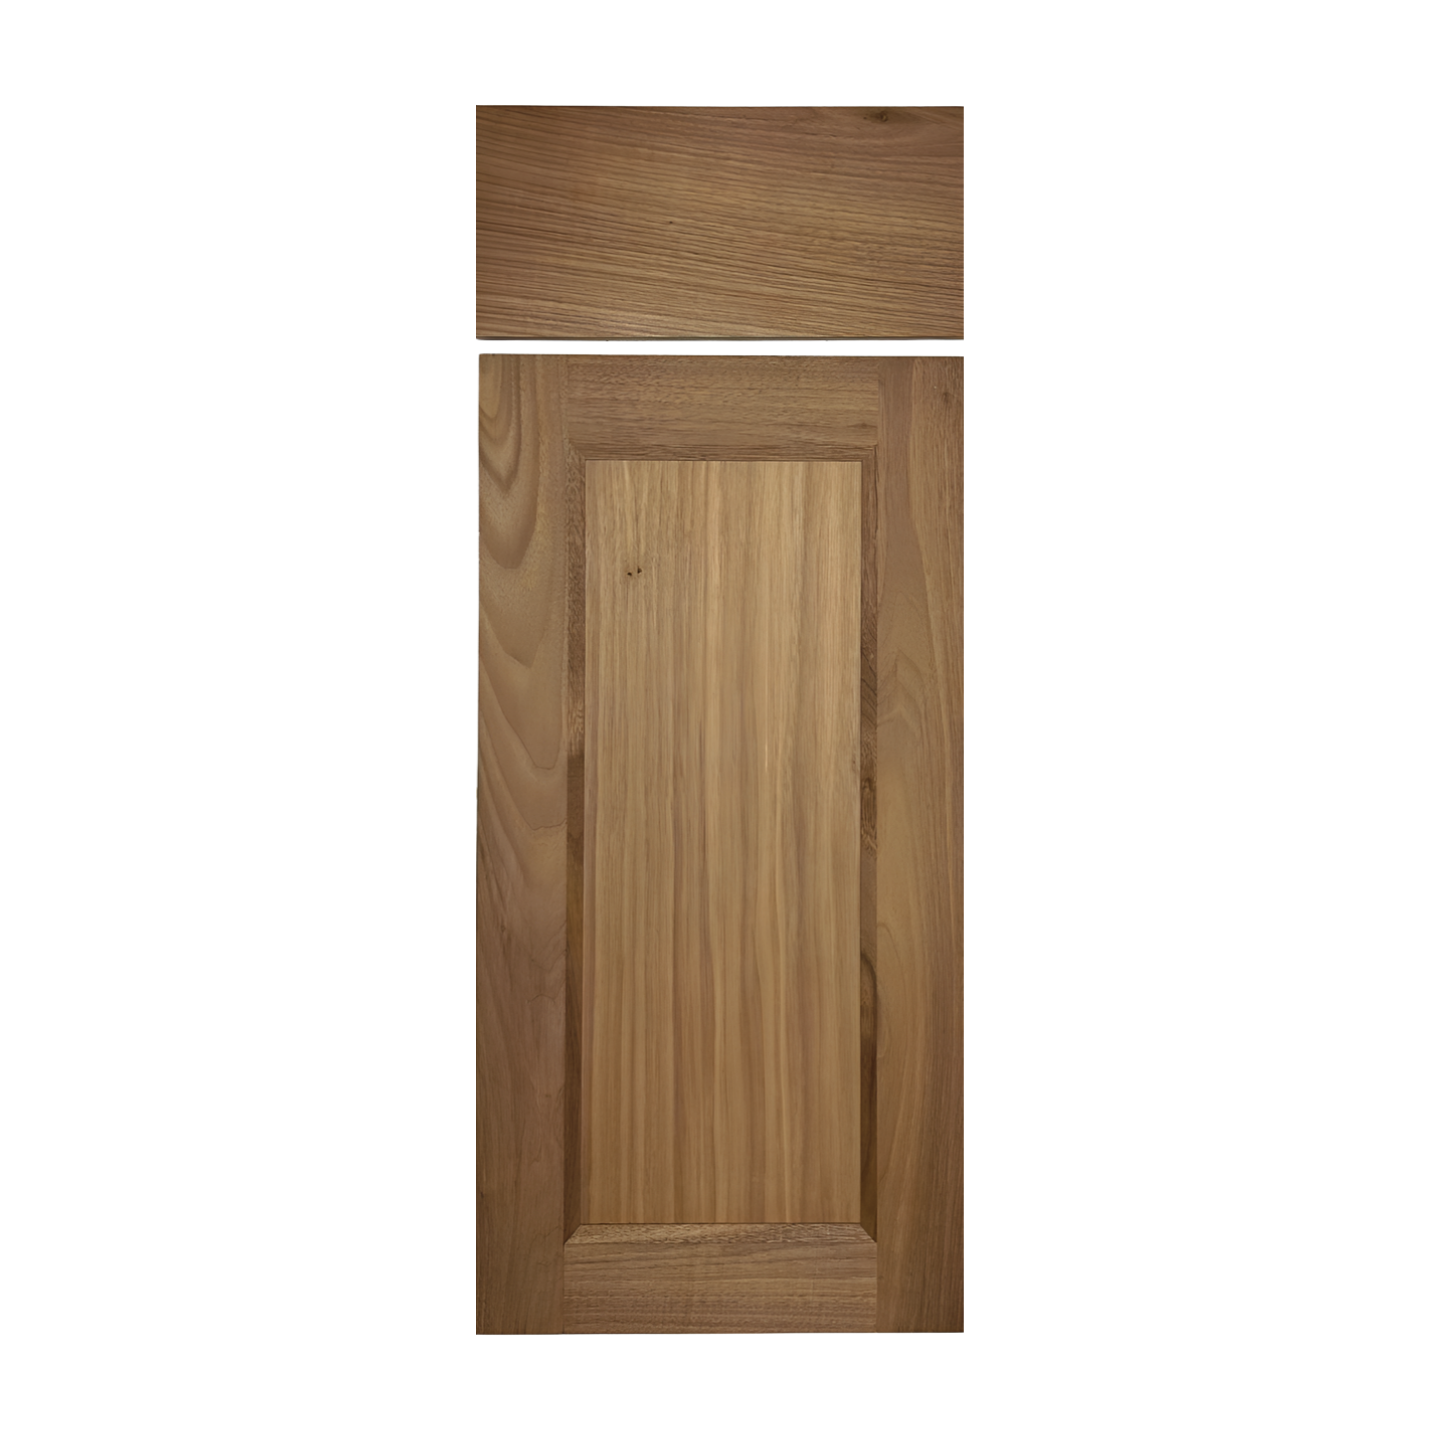 shaker door and drawer fronts store | the shaker door store